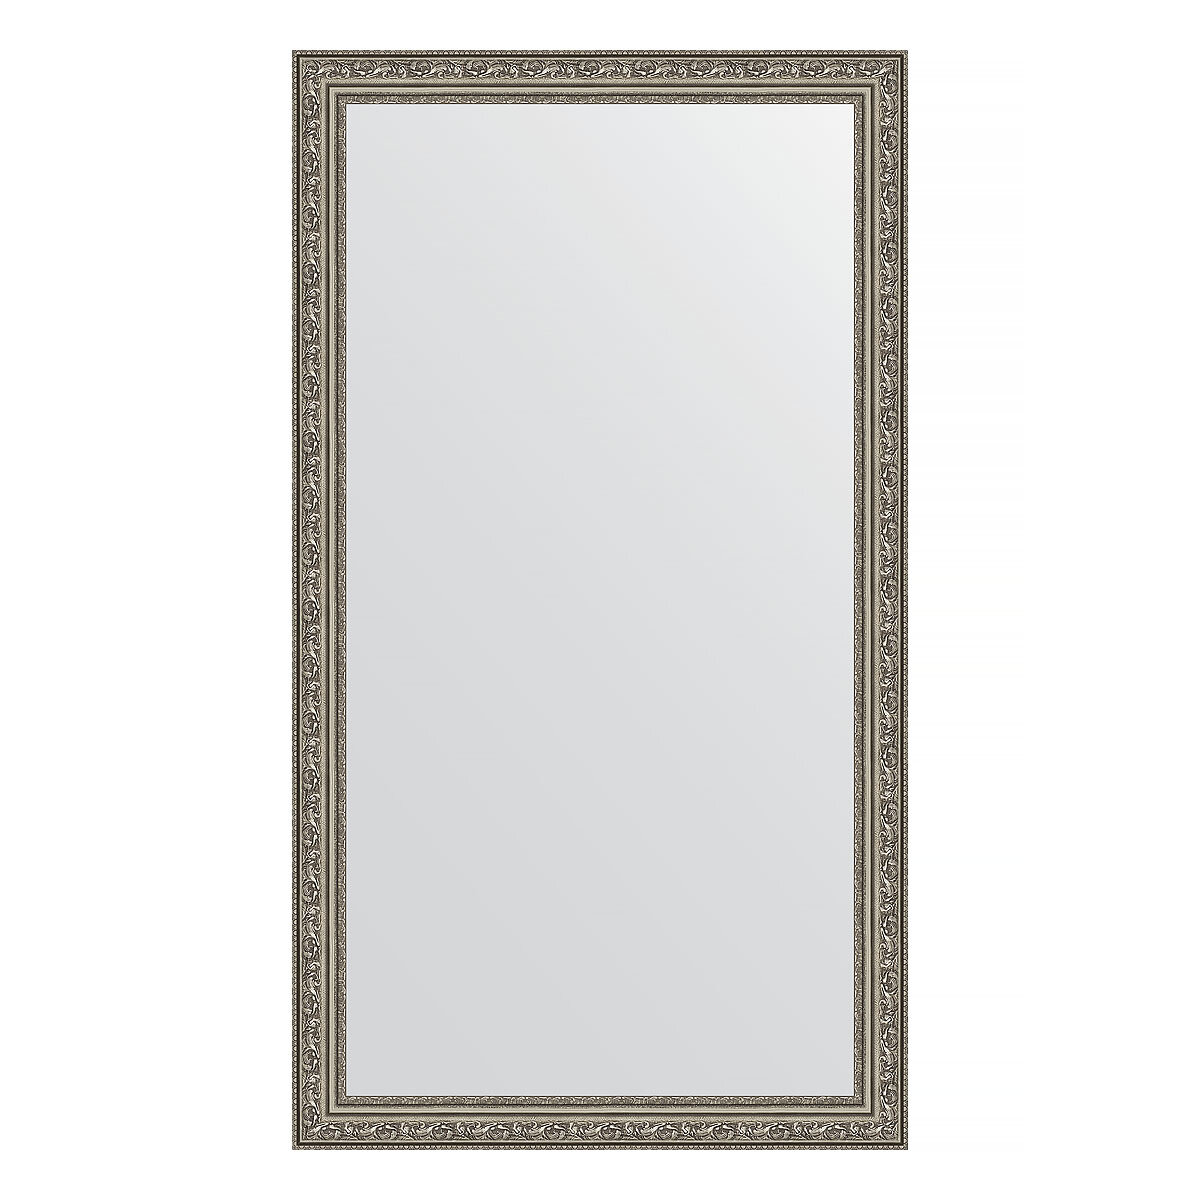 Зеркало настенное EVOFORM в багетной раме виньетка состаренное серебро, 64х114 см, для гостиной, прихожей, спальни и ванной комнаты, BY 3200